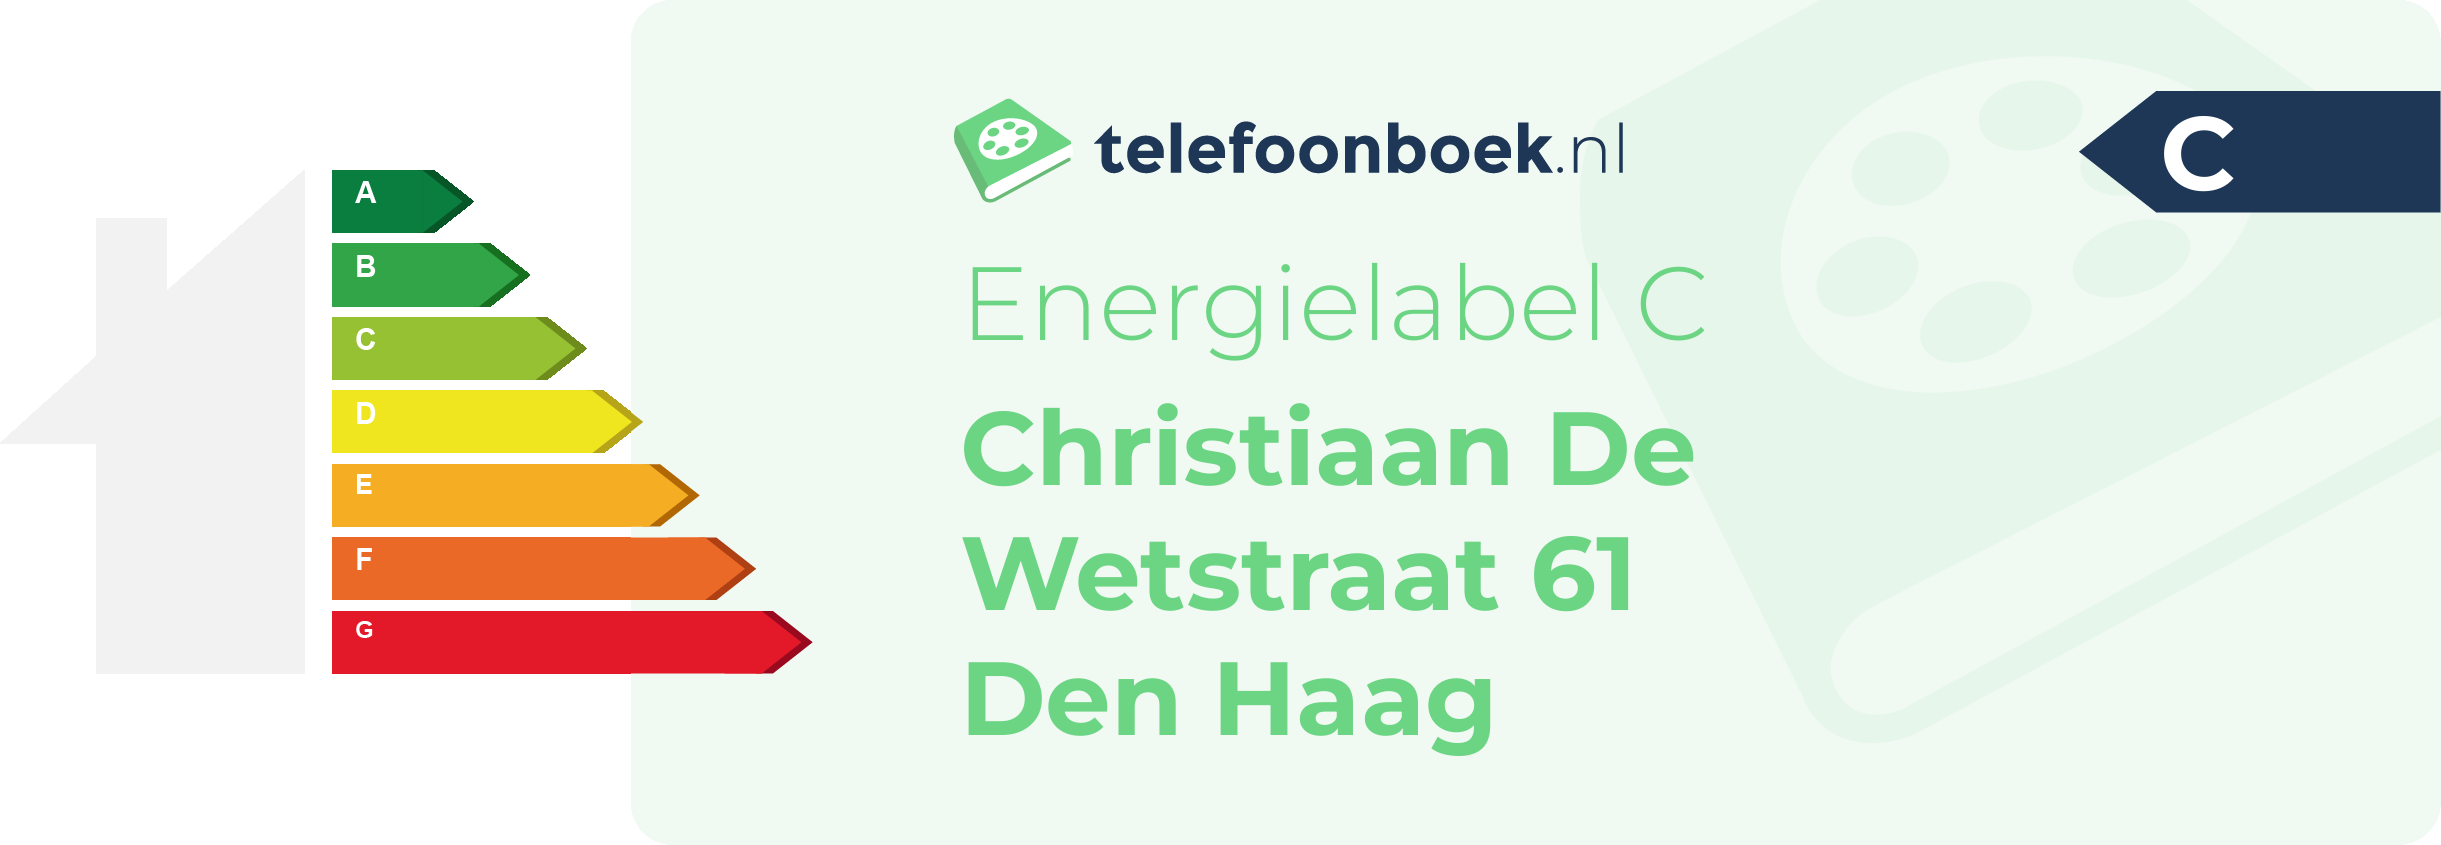 Energielabel Christiaan De Wetstraat 61 Den Haag